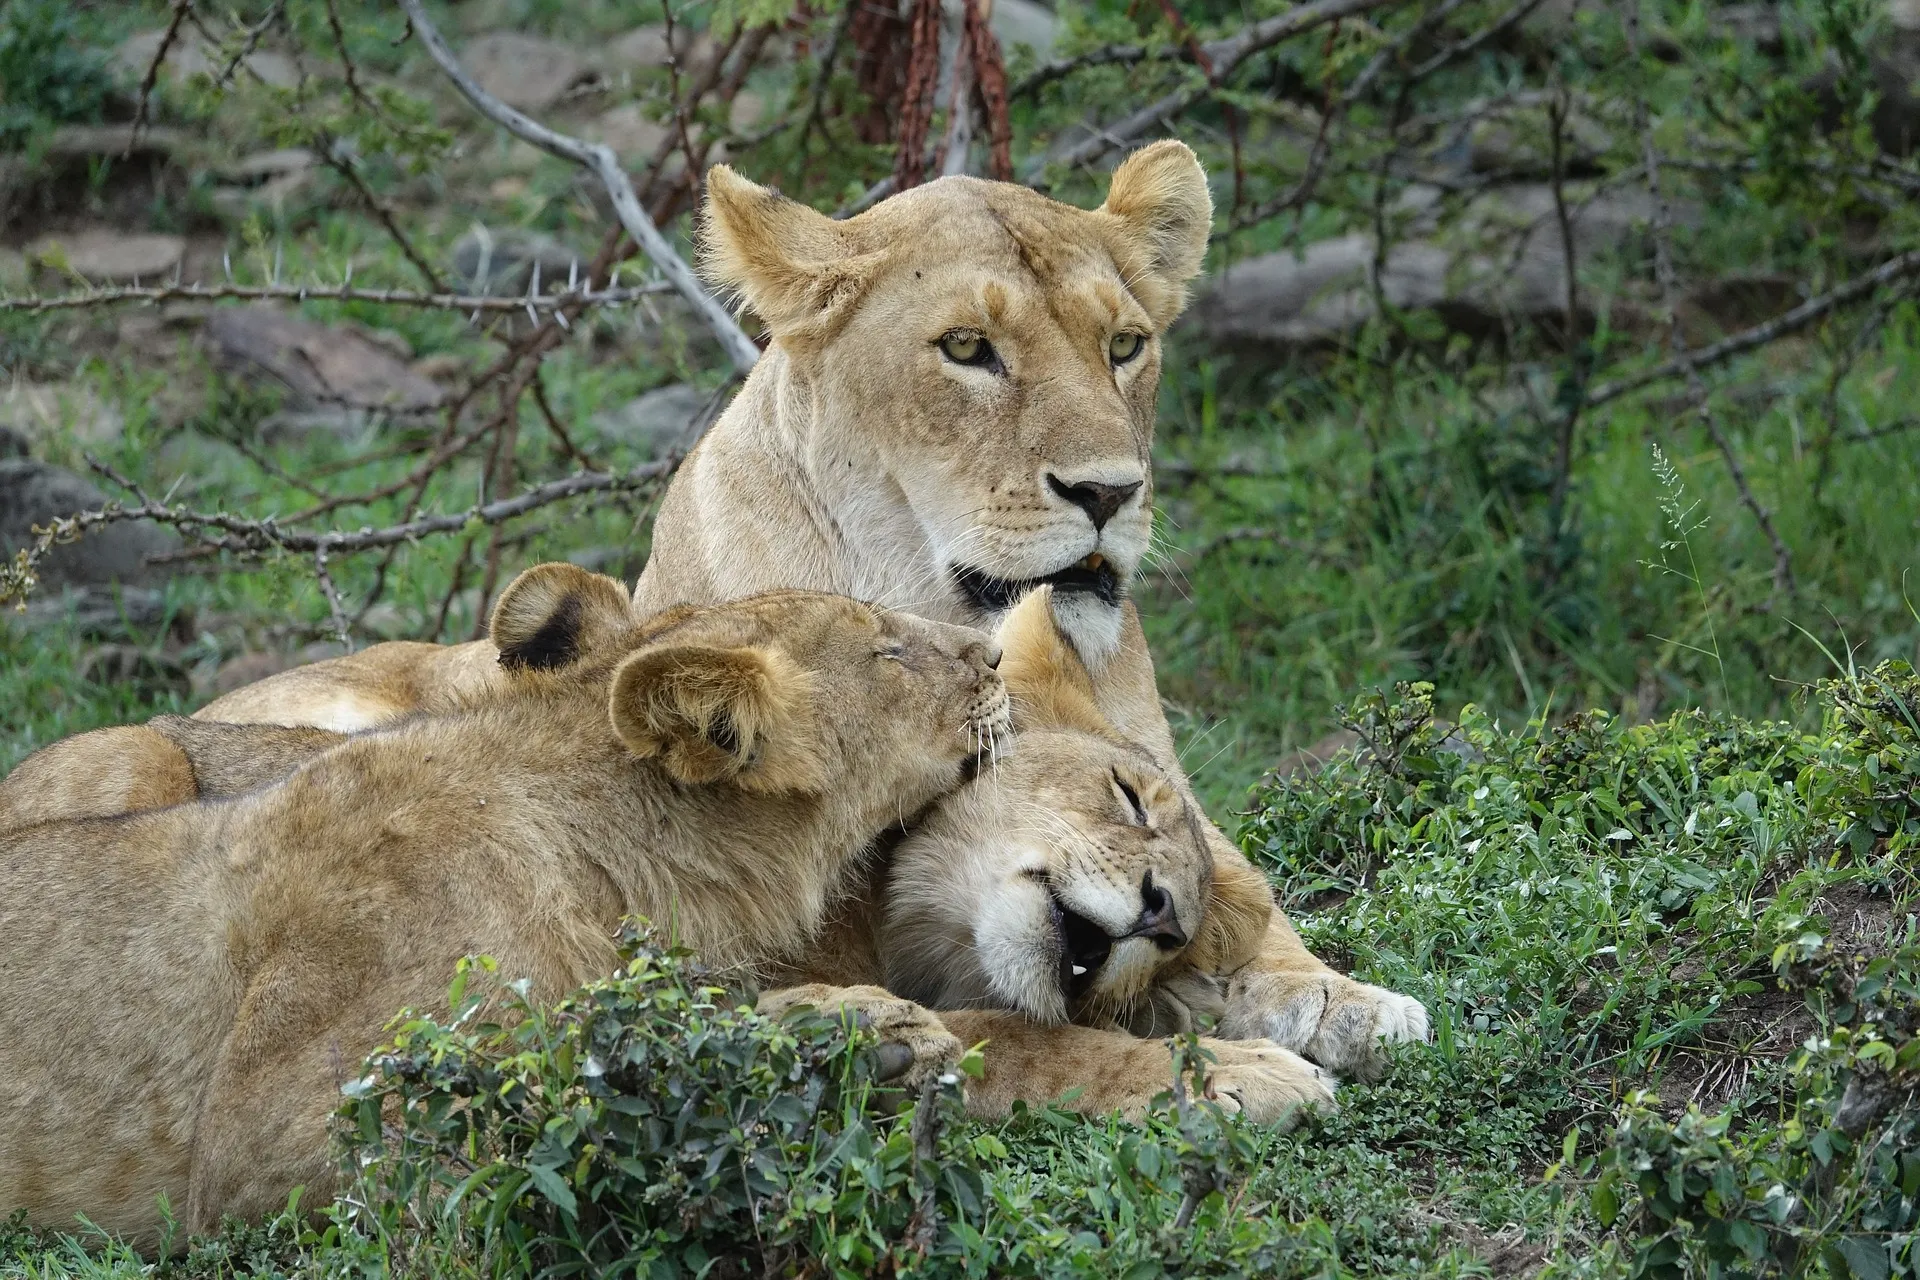 Lion at Kenya